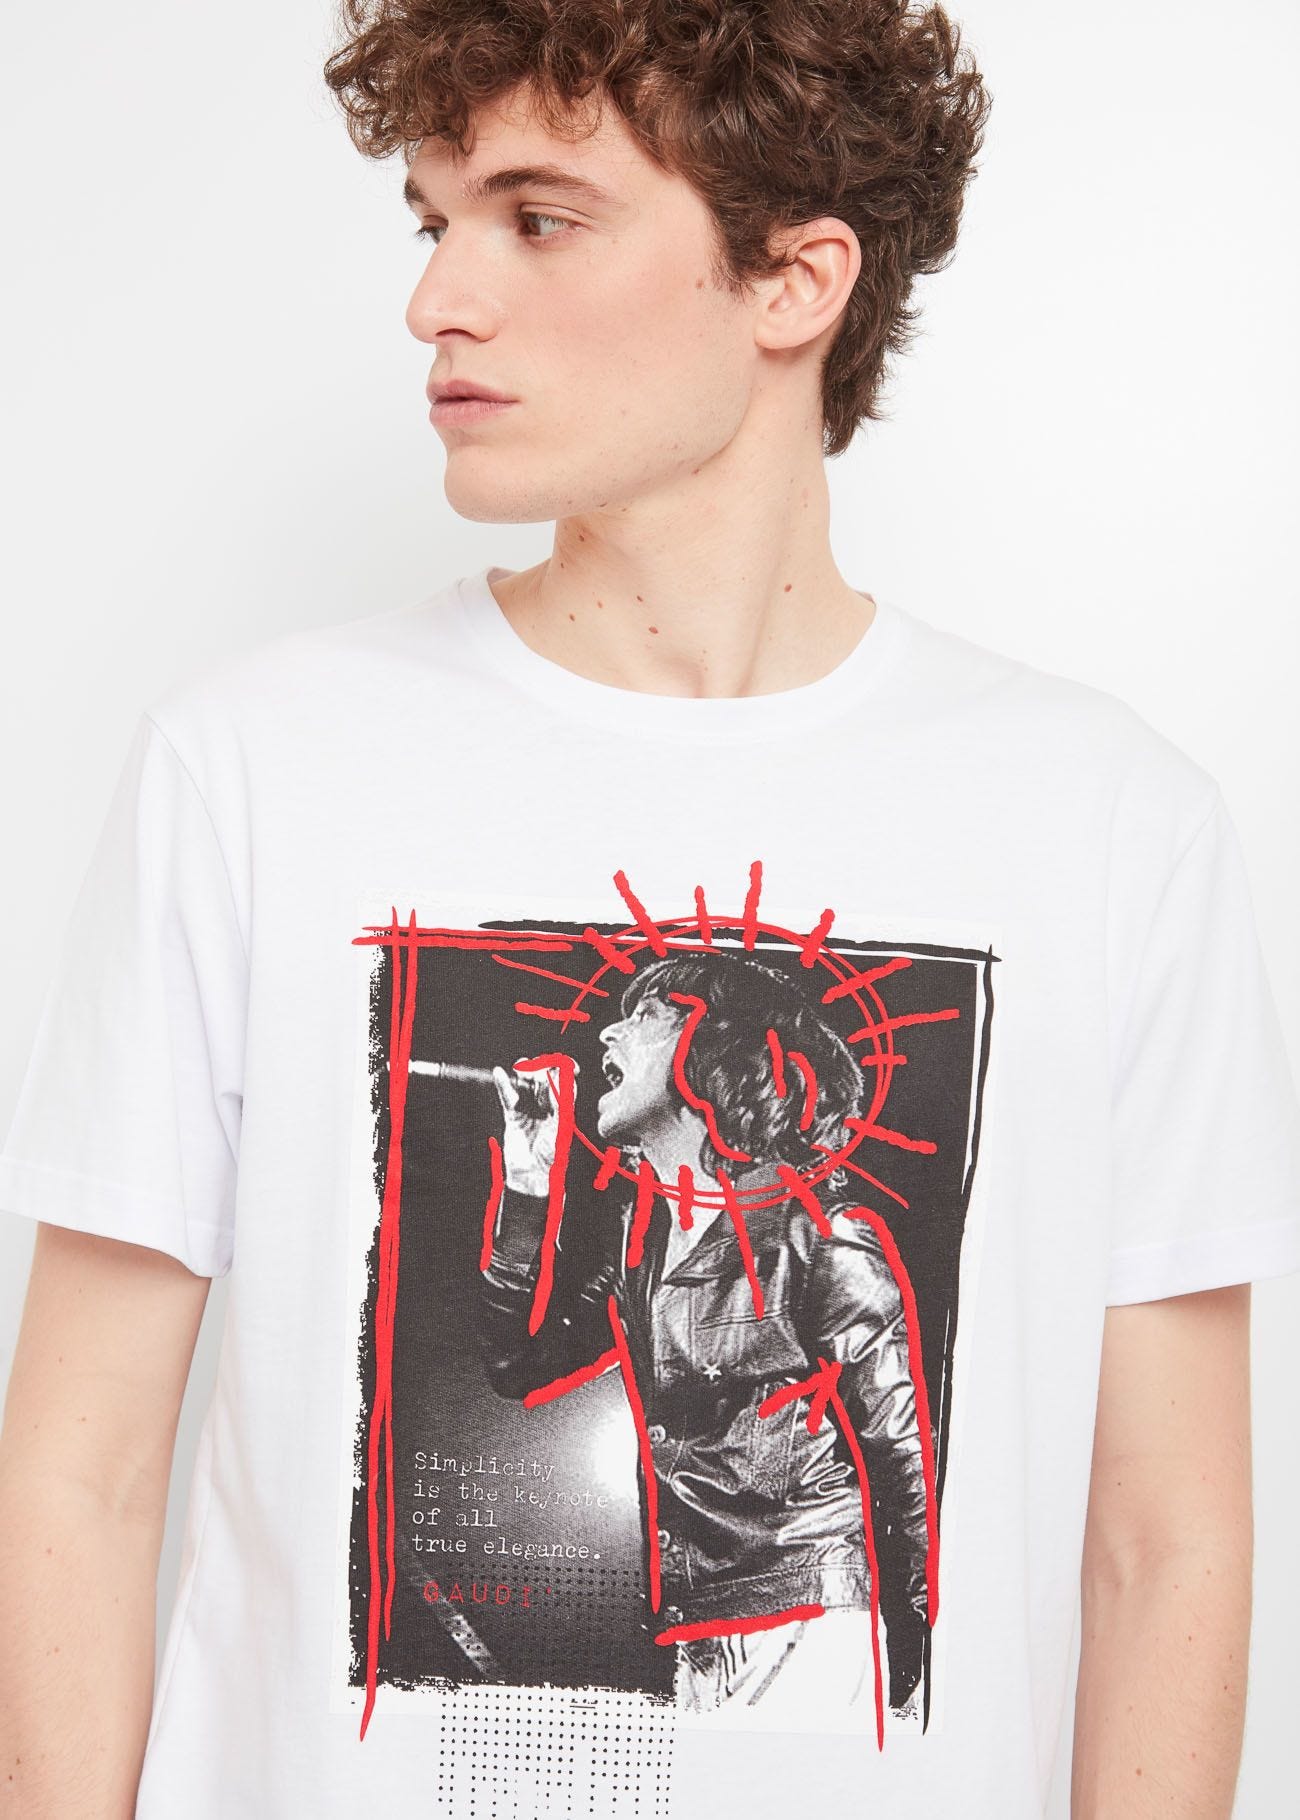 T-shirt Mick Jagger